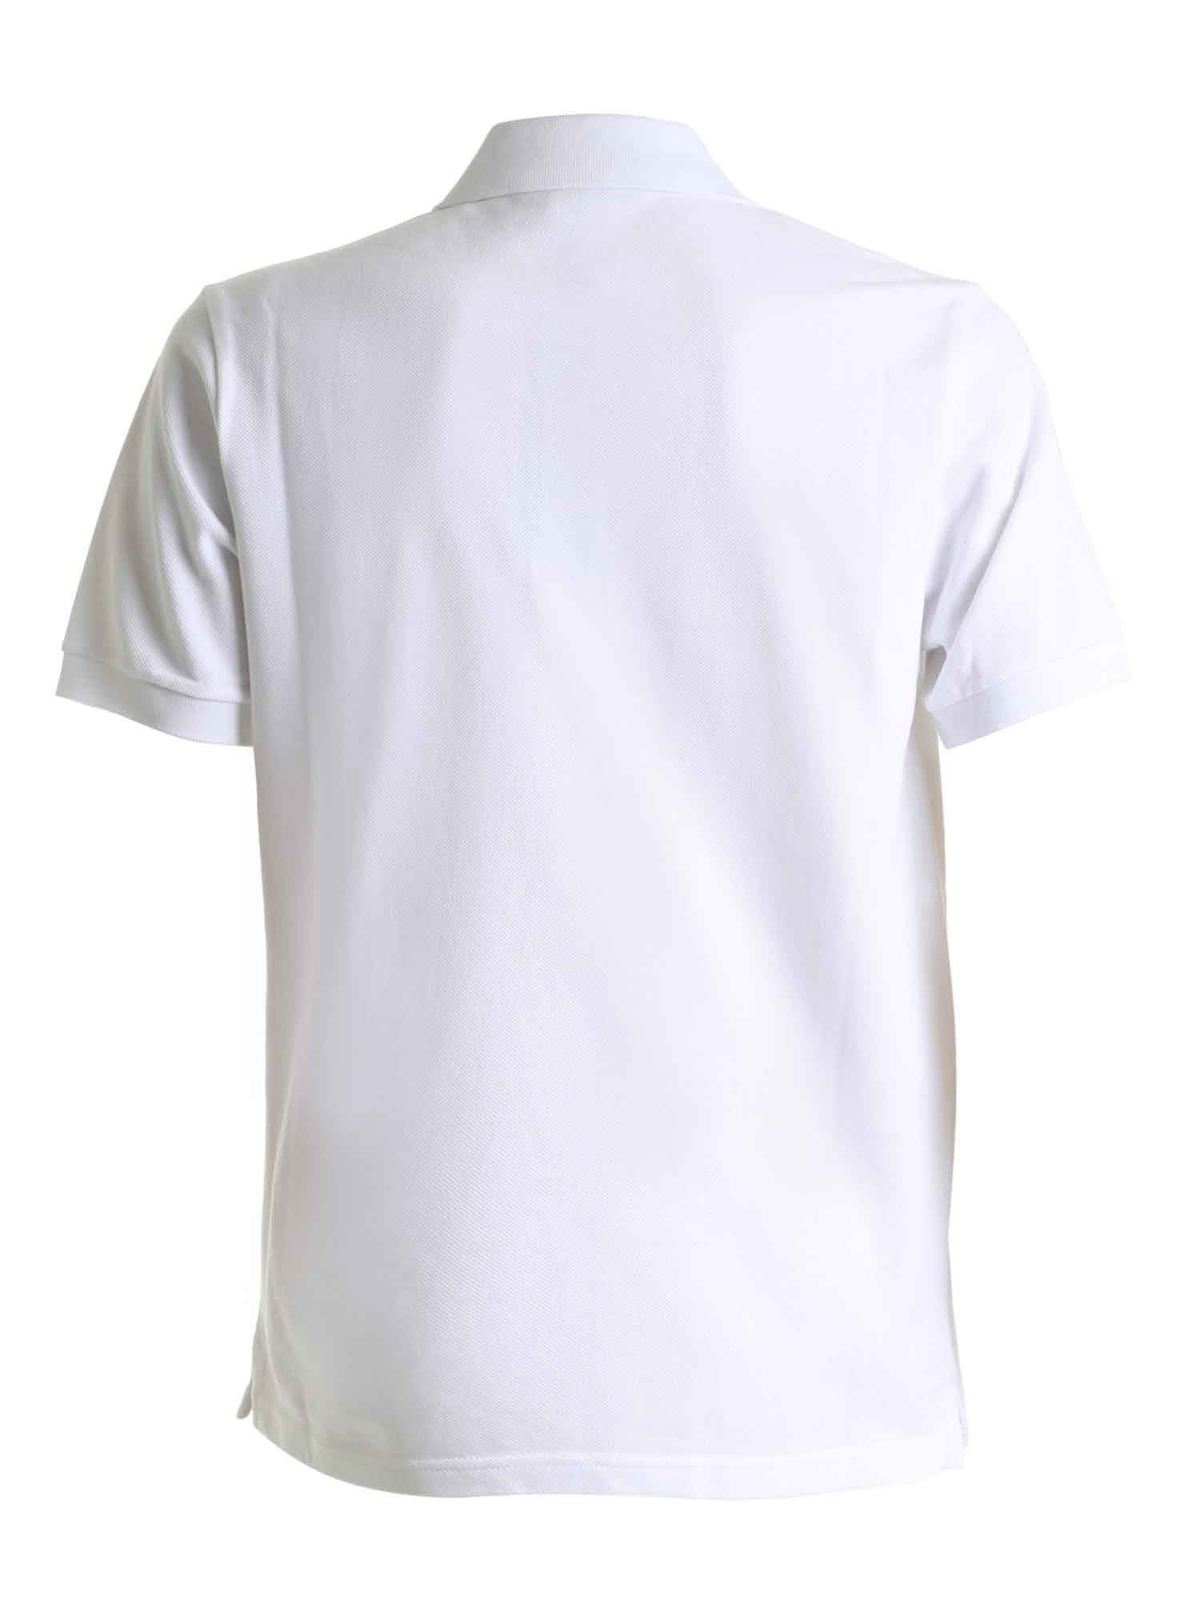 Dior - Dior and Shawn polo shirt in white - polo shirts - 033J806D0455080